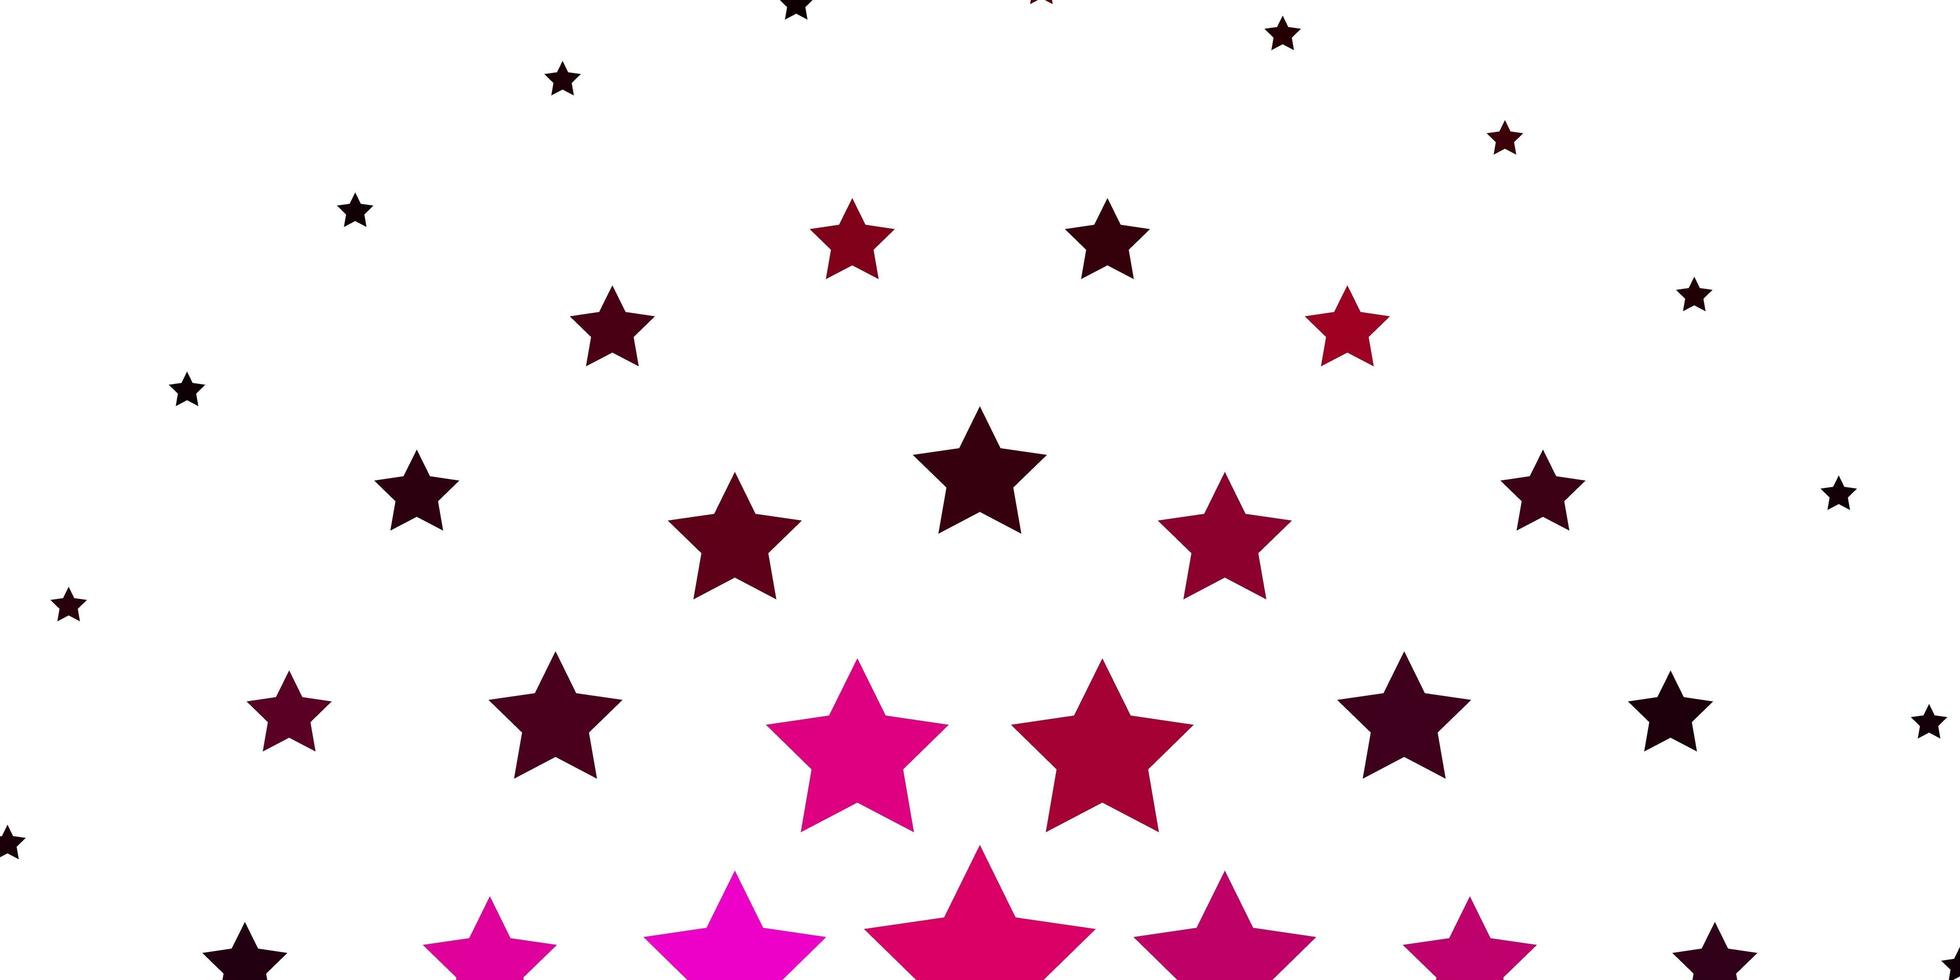 fond de vecteur rose clair avec des étoiles colorées. illustration colorée dans un style abstrait avec des étoiles dégradées. conception pour la promotion de votre entreprise.